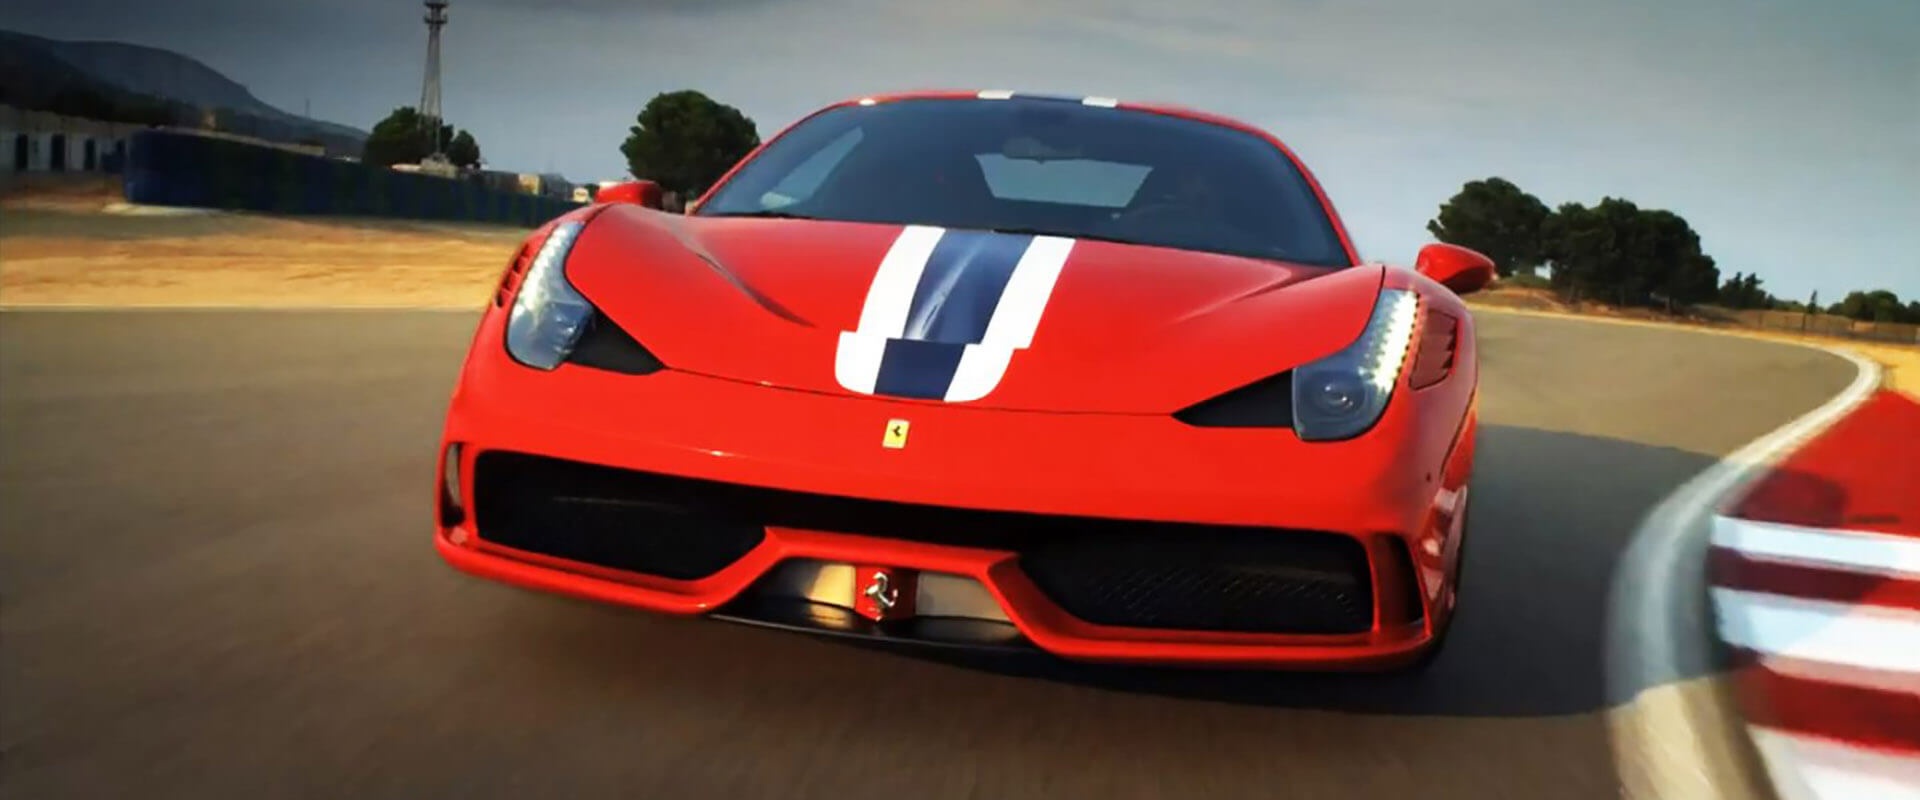 Ferrari Speciale – Quando a excelência alcança a perfeição